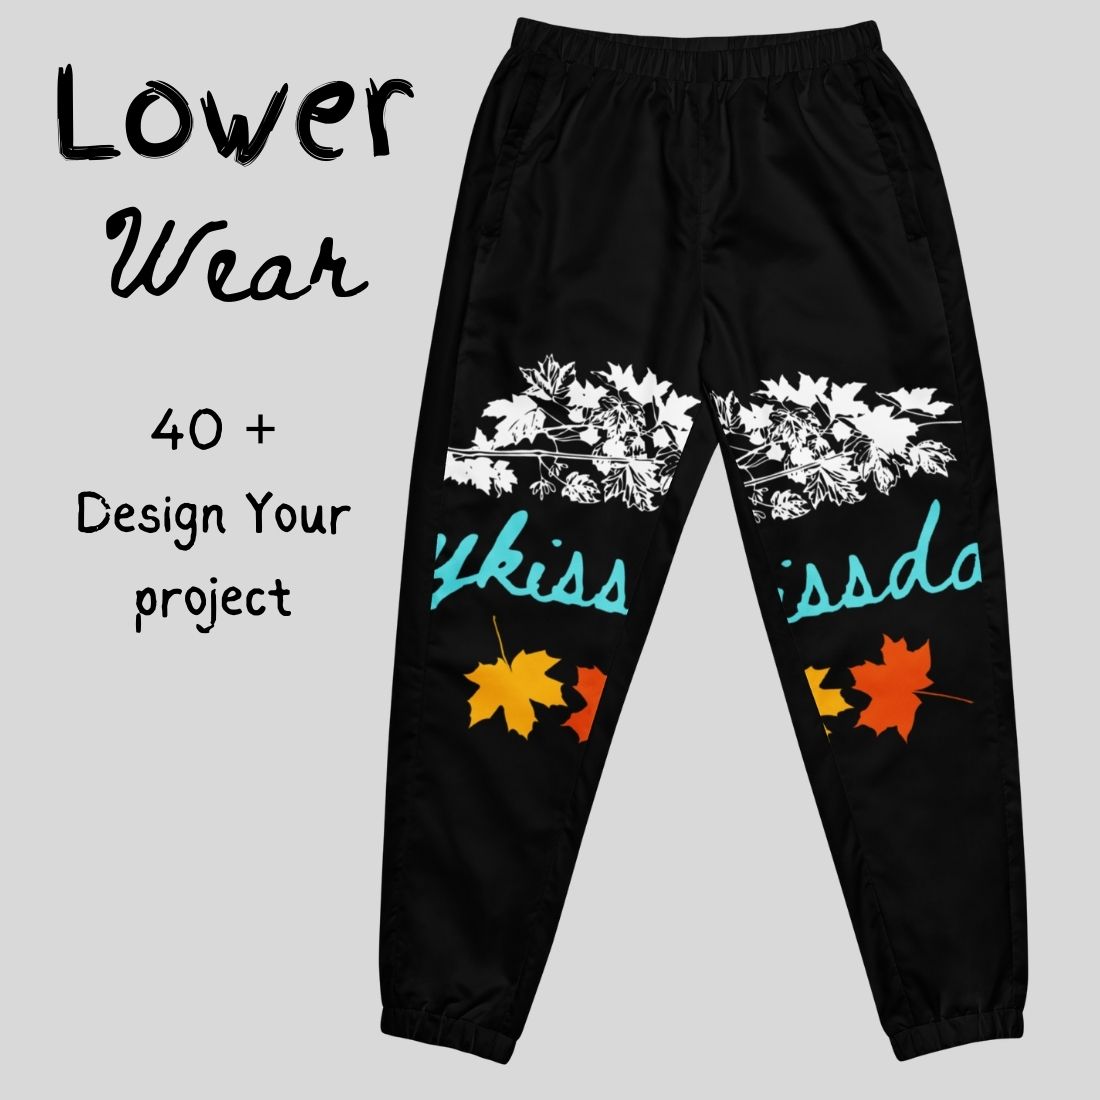 Lower wear Design - Nighty Design for Men's / Women / kids / Sliper / Shorts / Design Buy now preview image.